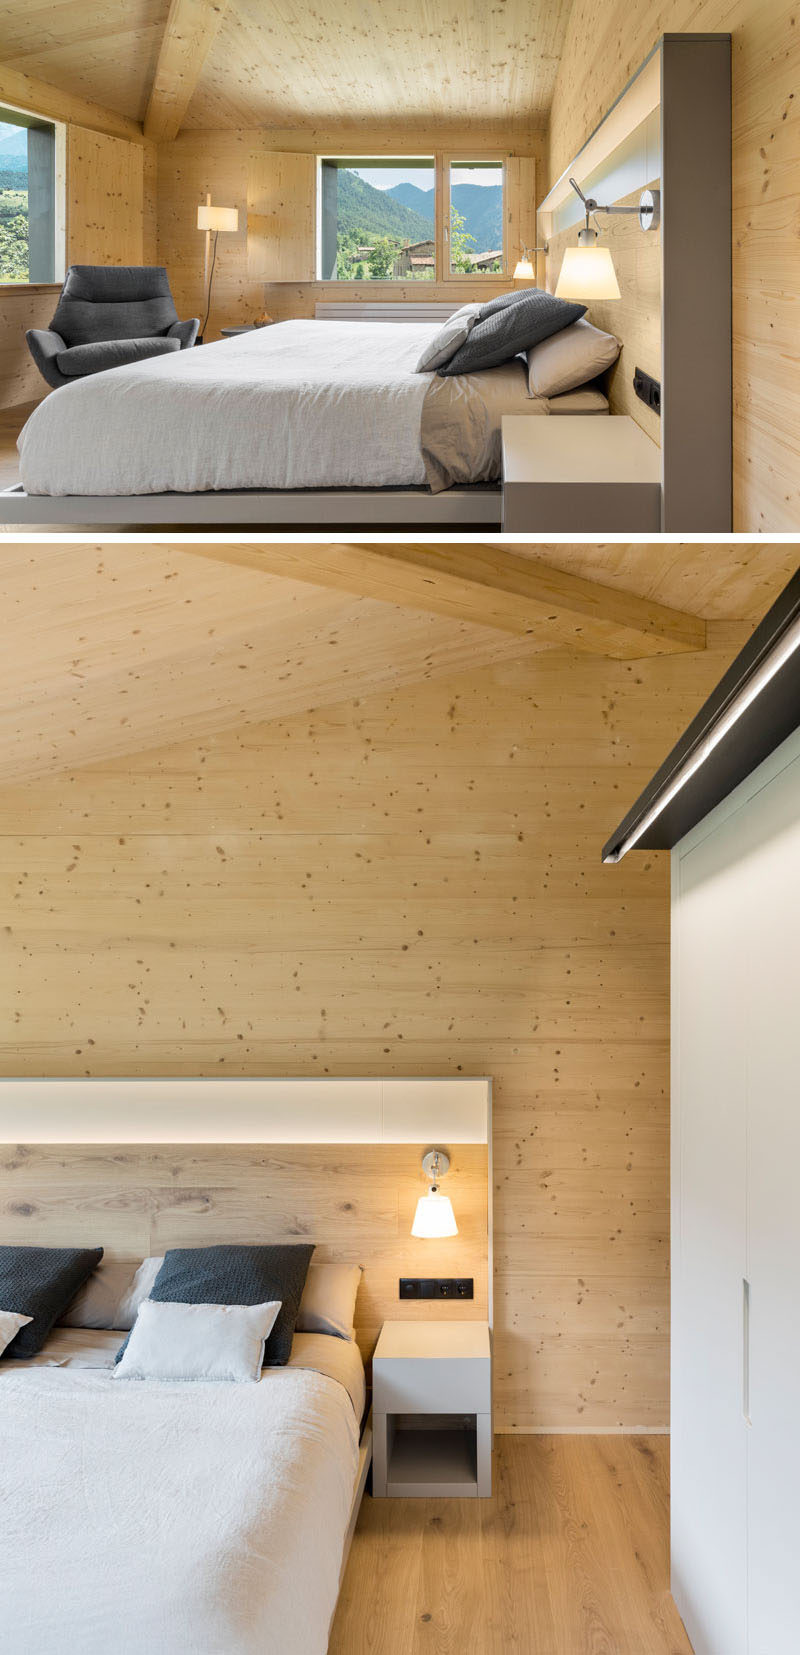  Современная главная спальня с высокими потолками окружена деревянными полами и стенами. # МастерСпальня # СпальняДизайн 